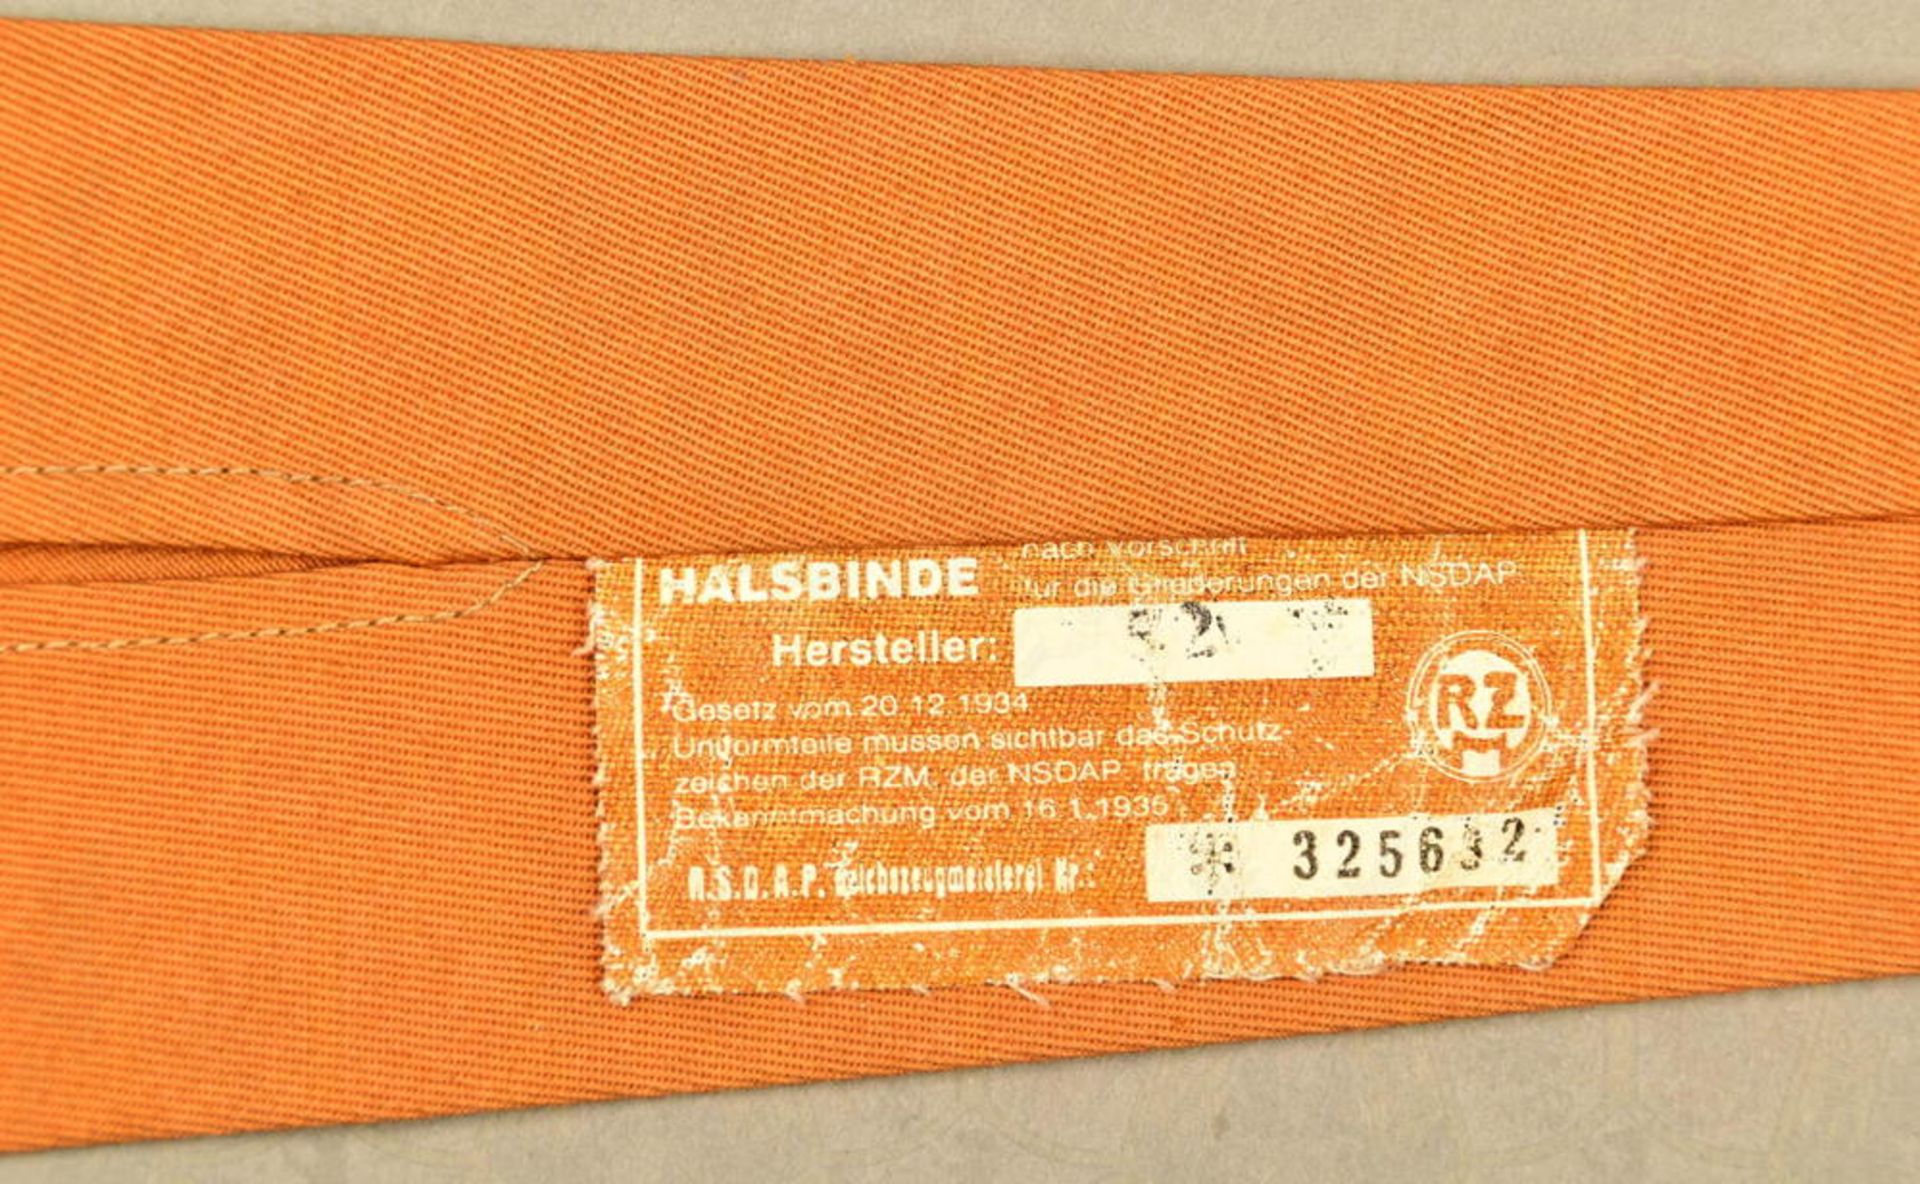 SA-Halsbinde (Krawatte) - Image 3 of 4